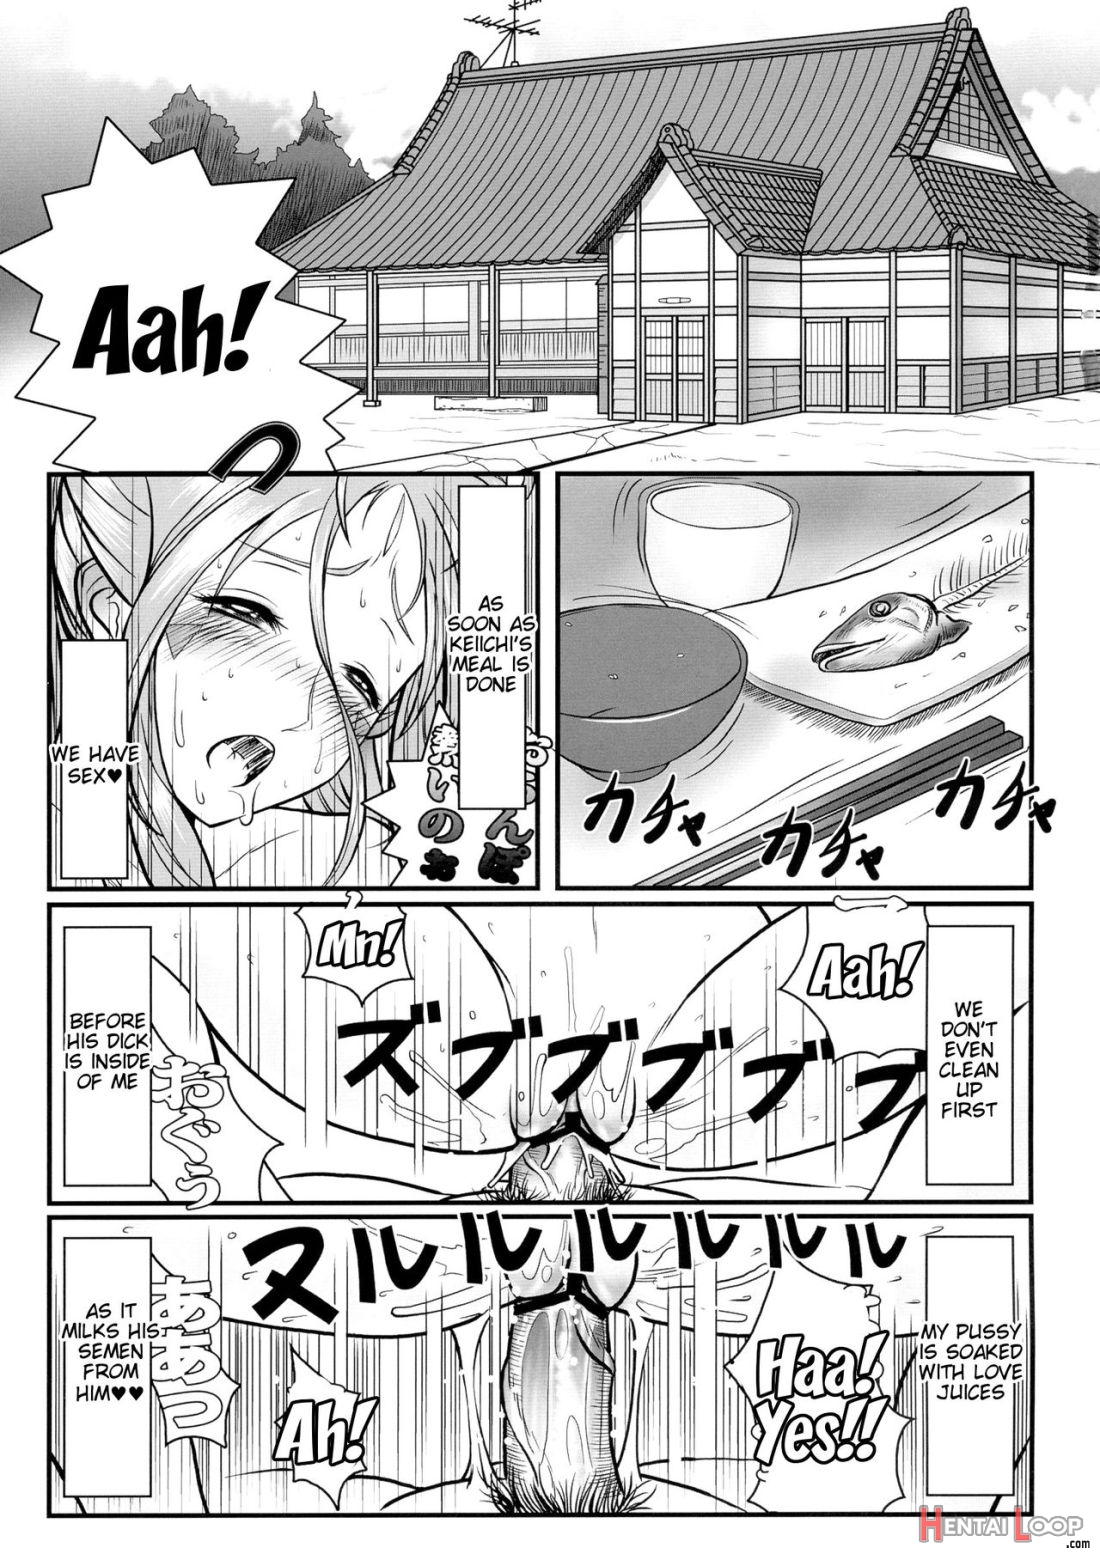 Gangu Megami Ni page 2